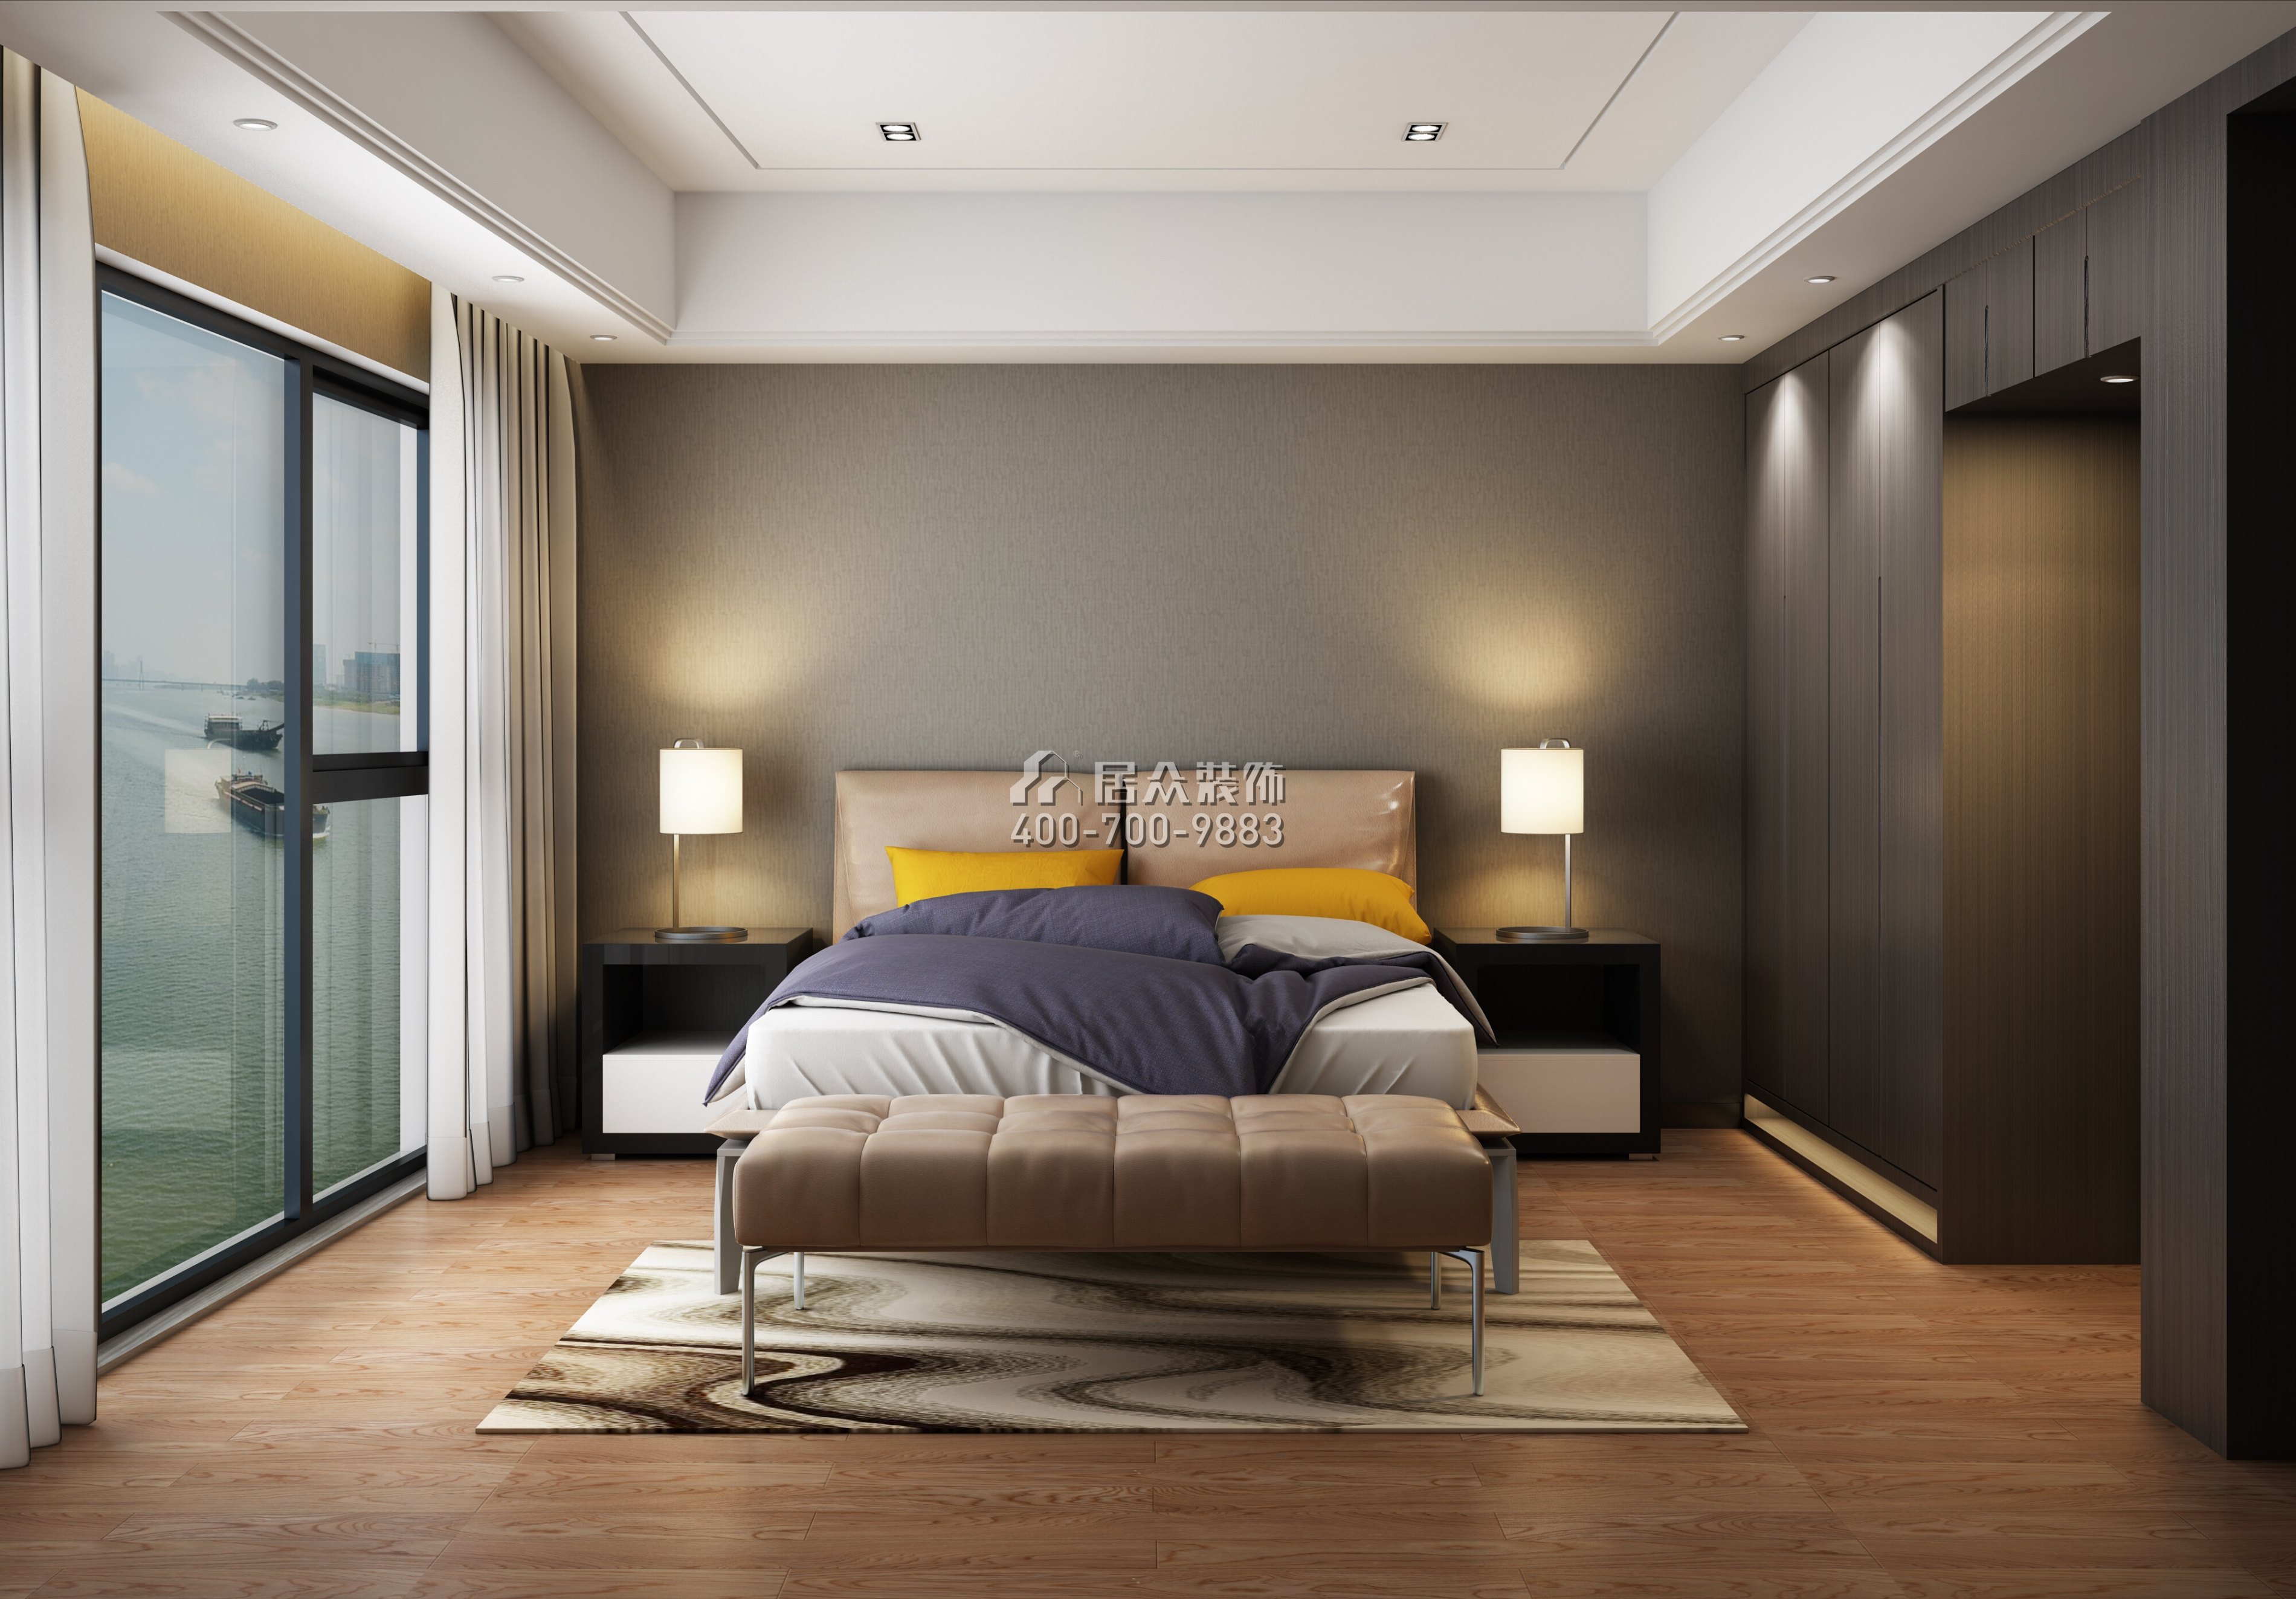 北辰定江洋249平方米现代简约风格平层户型卧室装修效果图